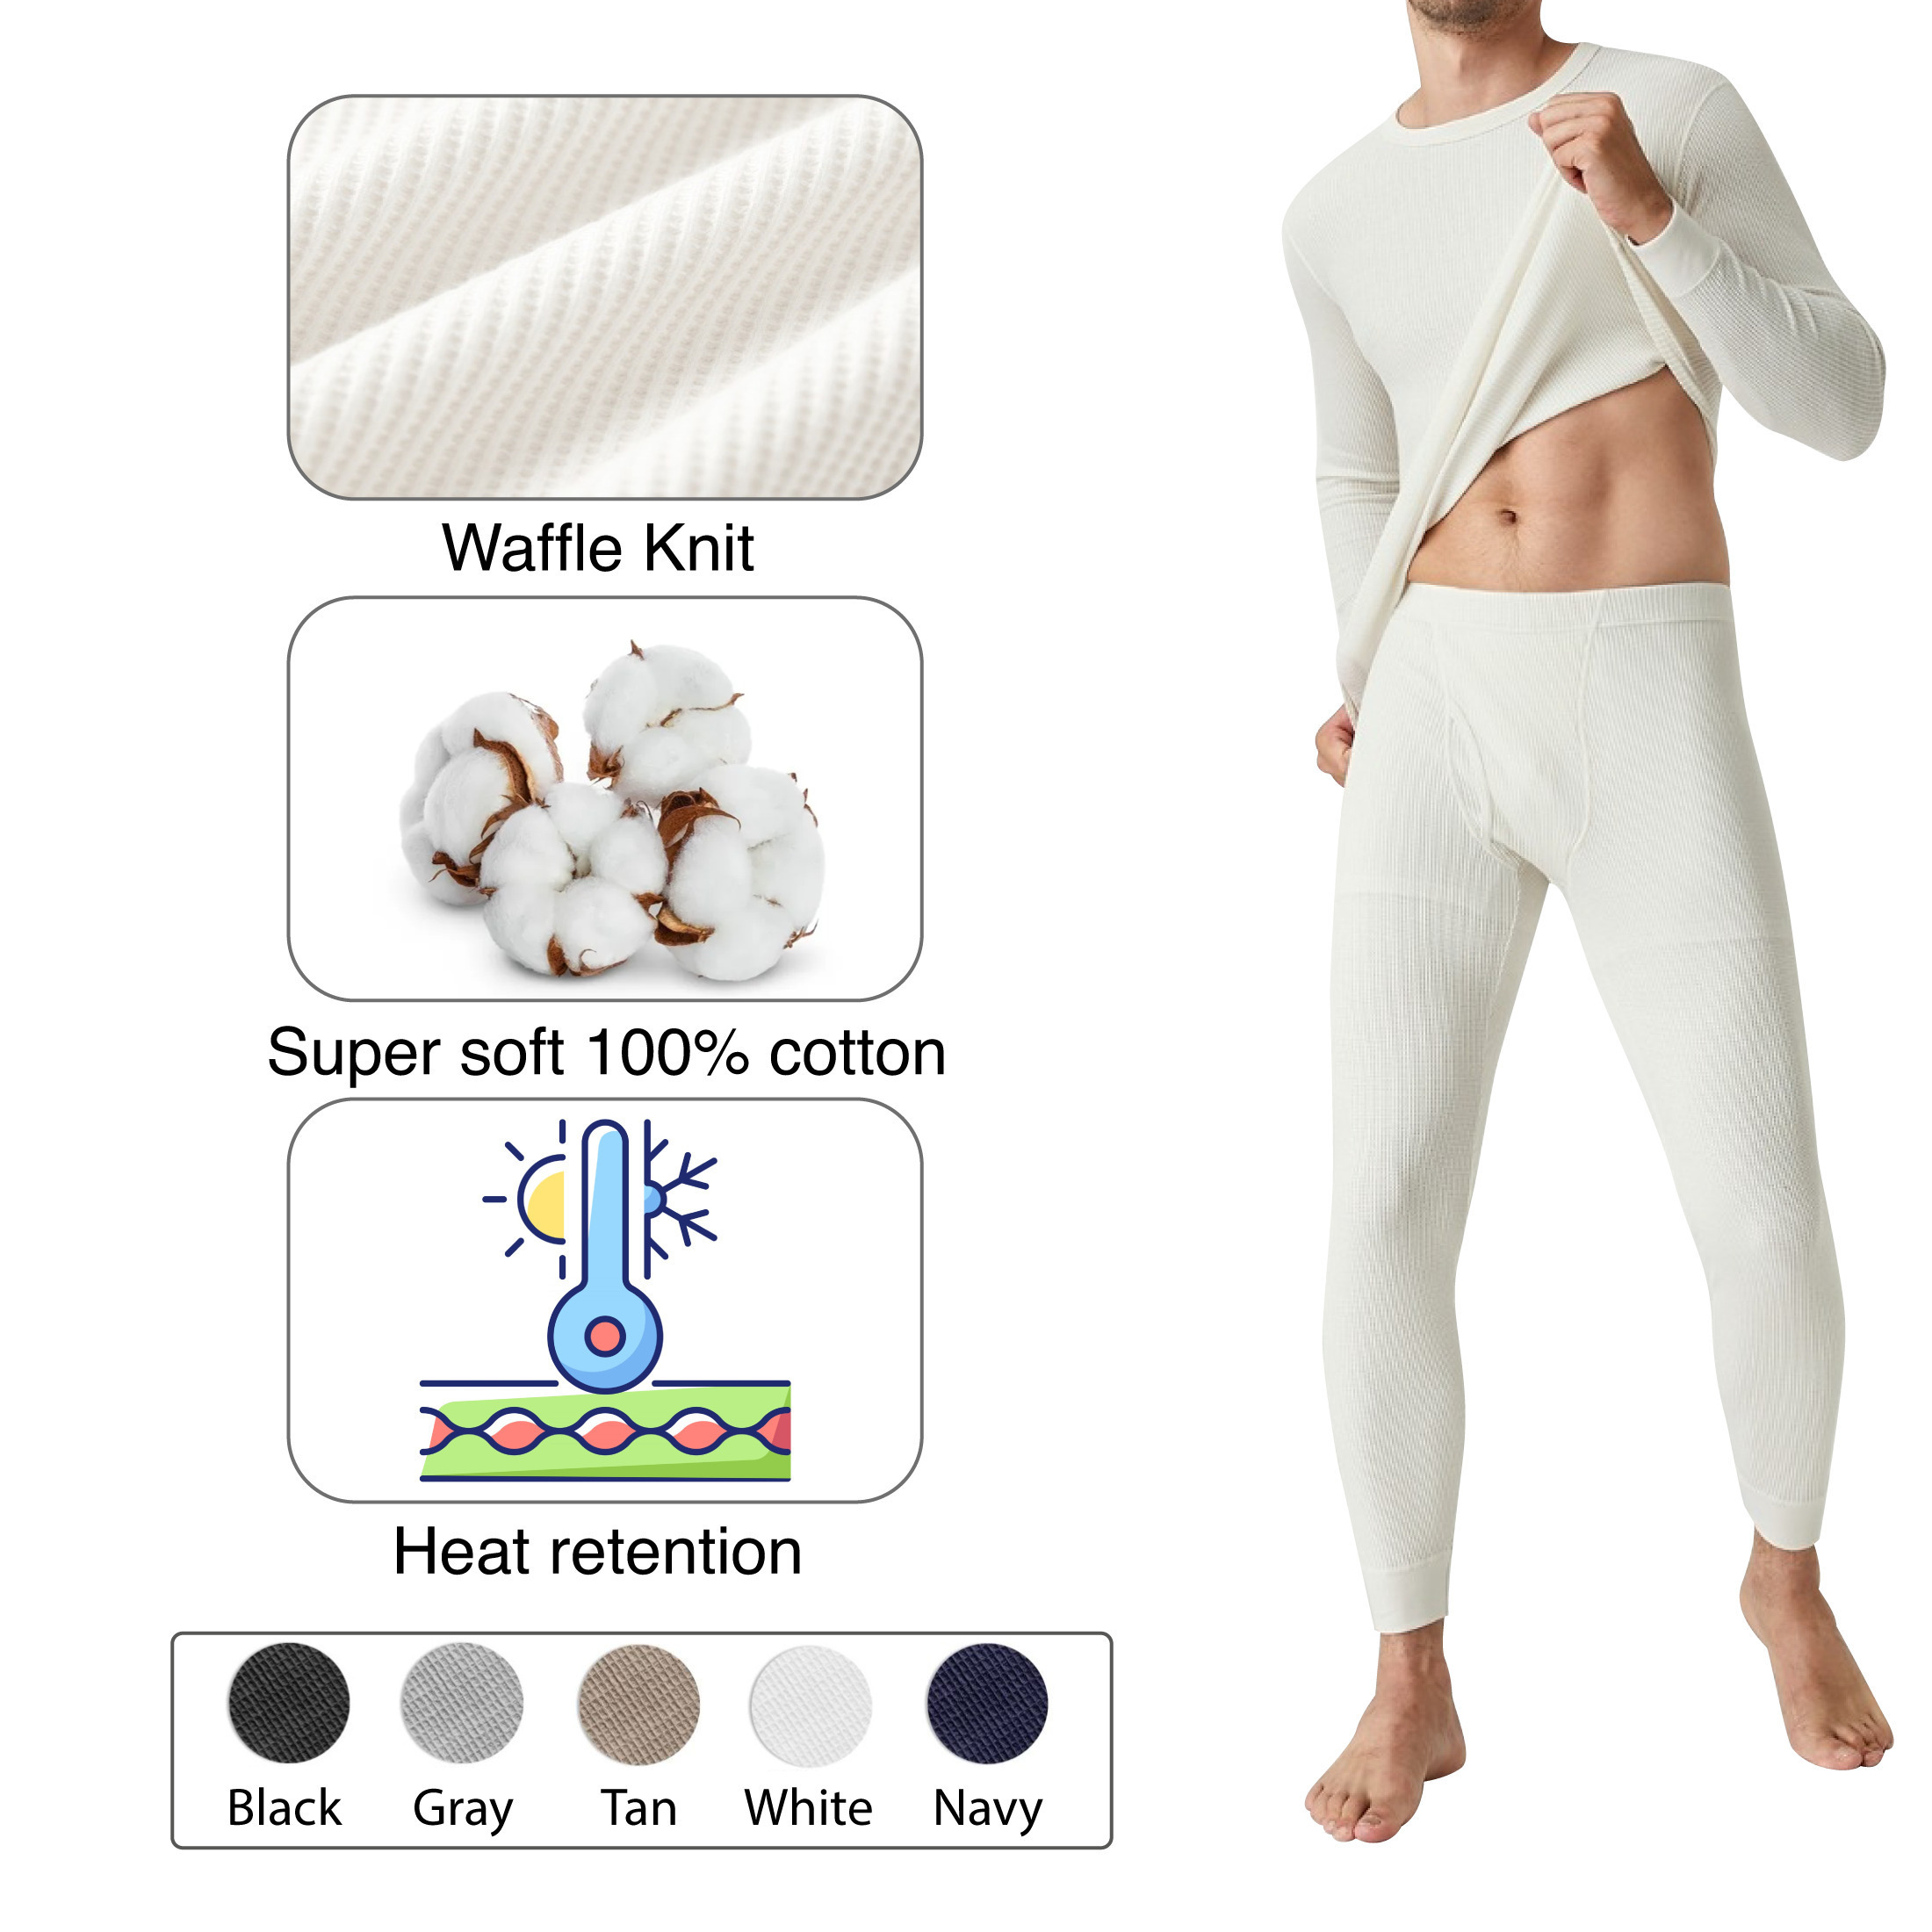 2-Piece: Men's Super Soft Cotton Waffle Knit Winter Thermal Underwear Set - White, Medium